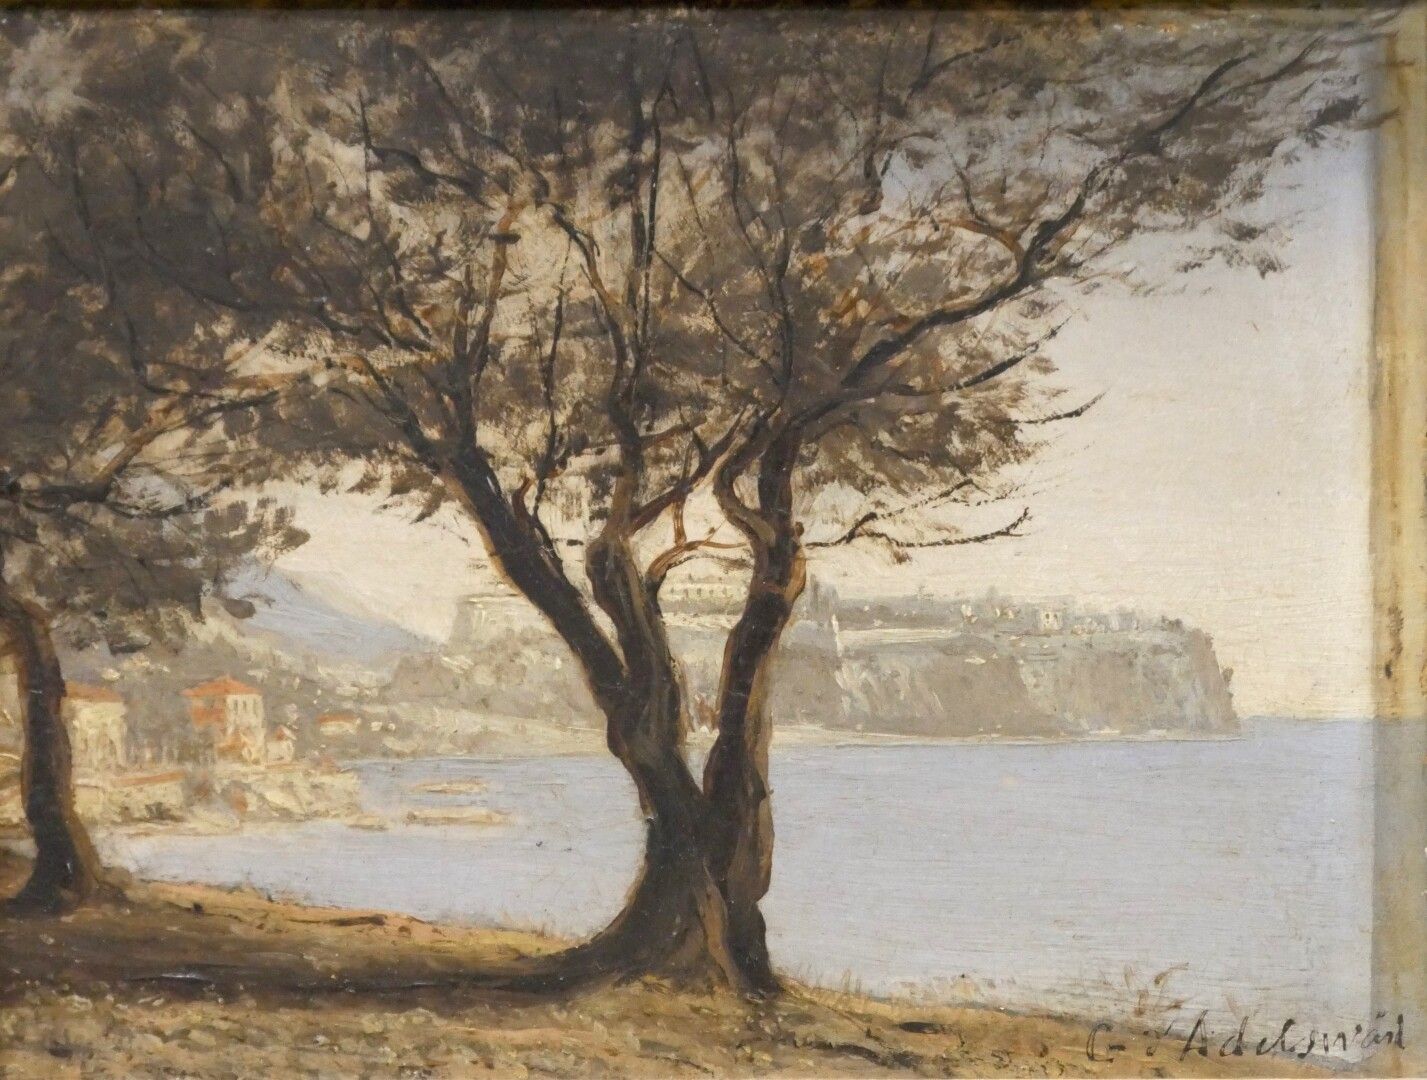 Null Gustaf d'ALDELSWÄRD (1843-1895)

Seaside Landscape 

Oil on panel 

Signed &hellip;